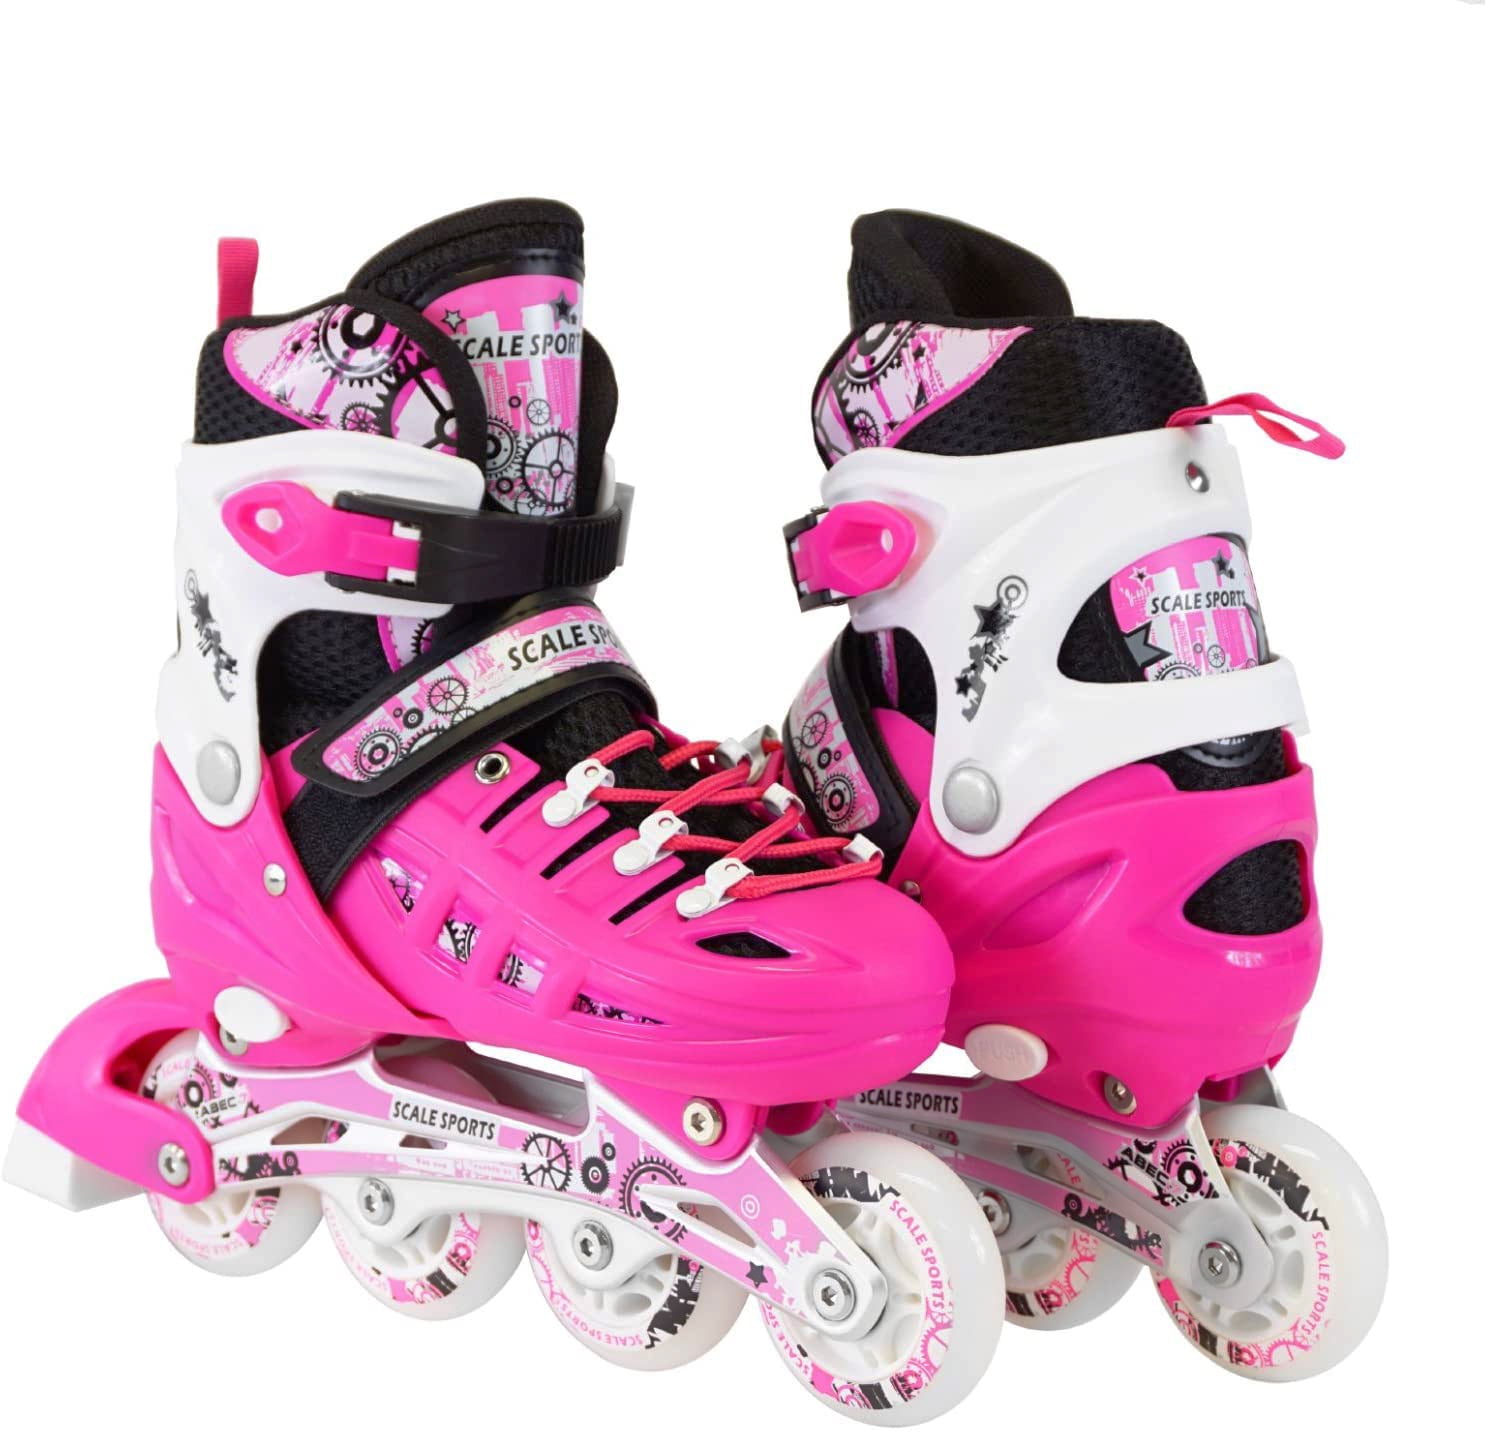 Eliiti Kids Inline Skates for Girls Boys Size 13J to 9 Adjustable Roller Blades 